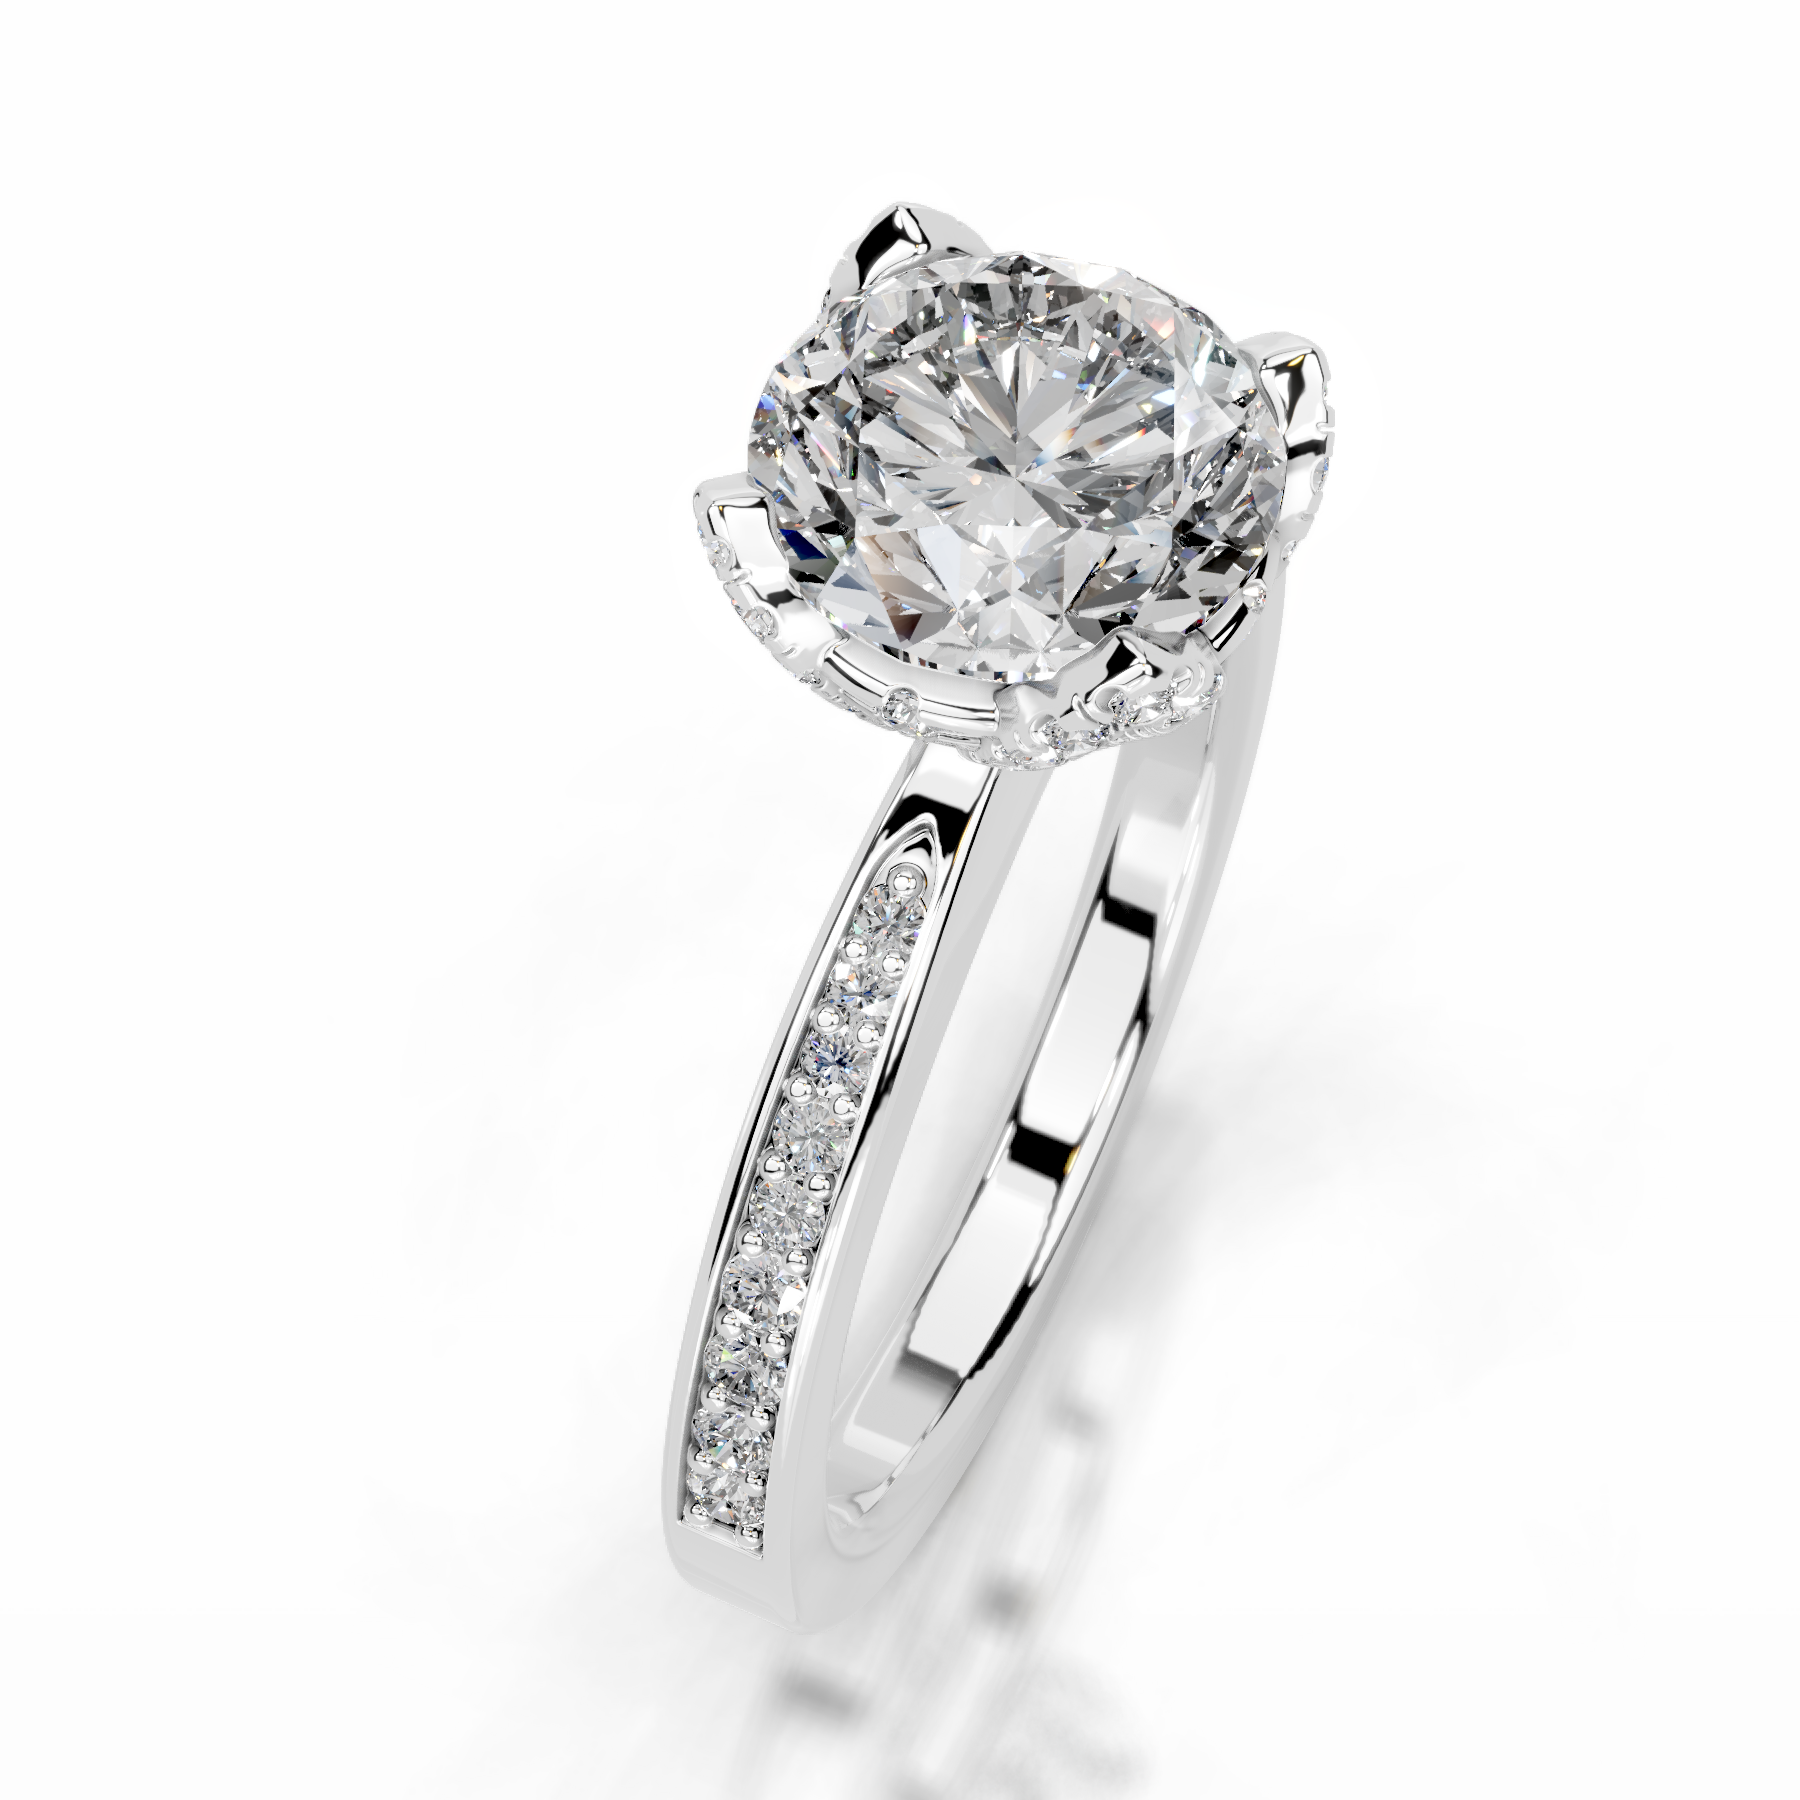 Daria Diamond Engagement Ring   (1.85 Carat) -14K White Gold